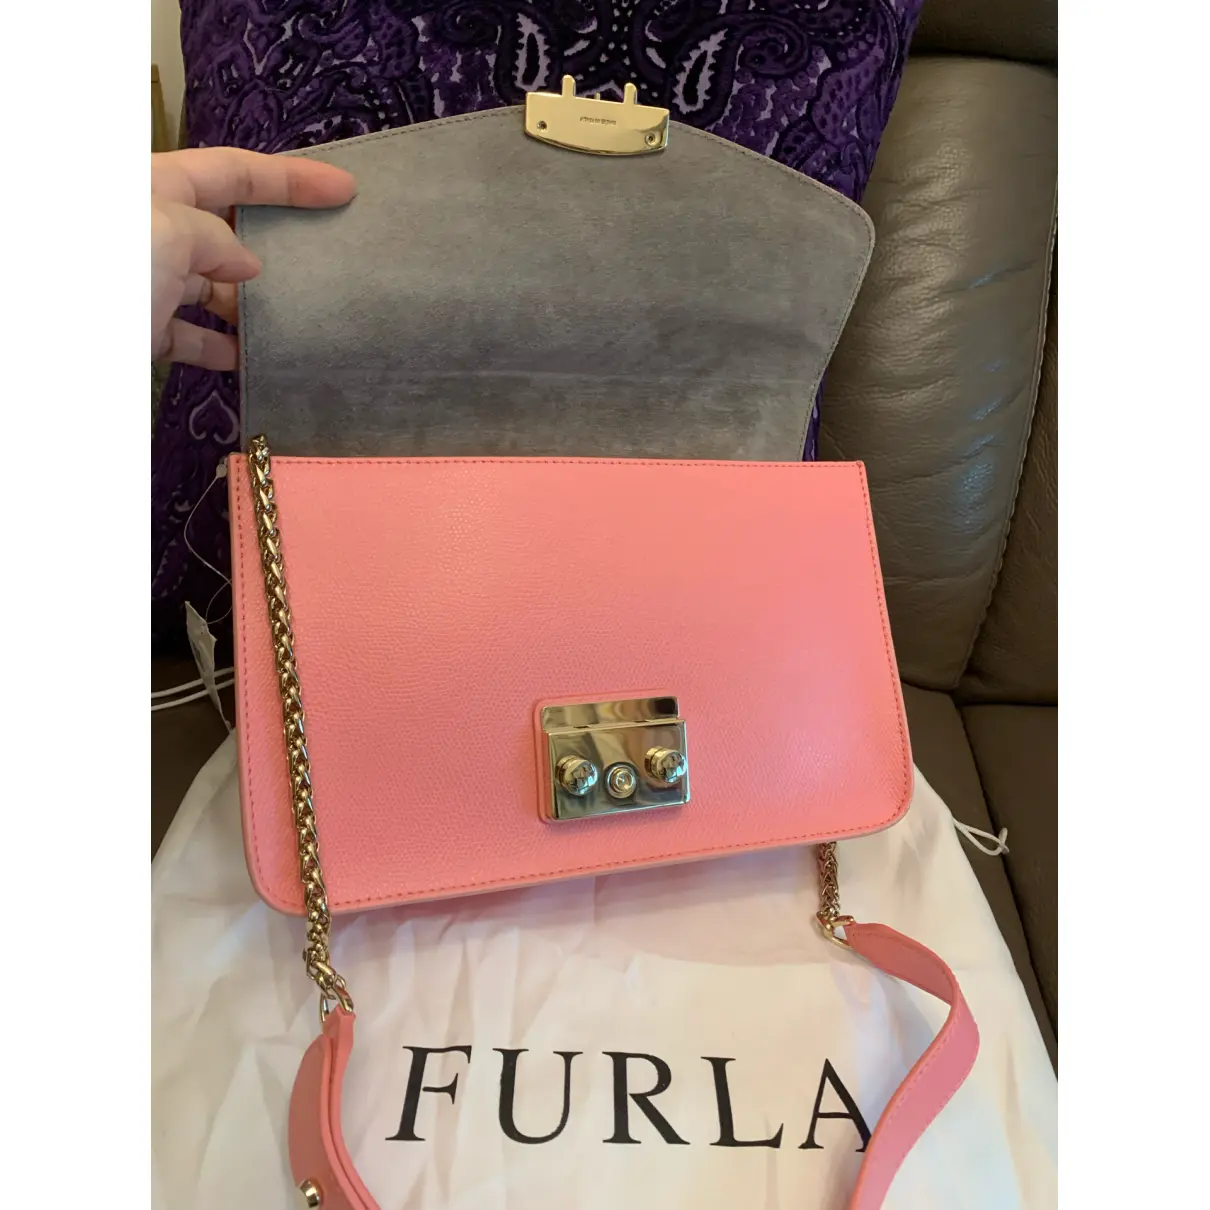 Metropolis leather handbag Furla